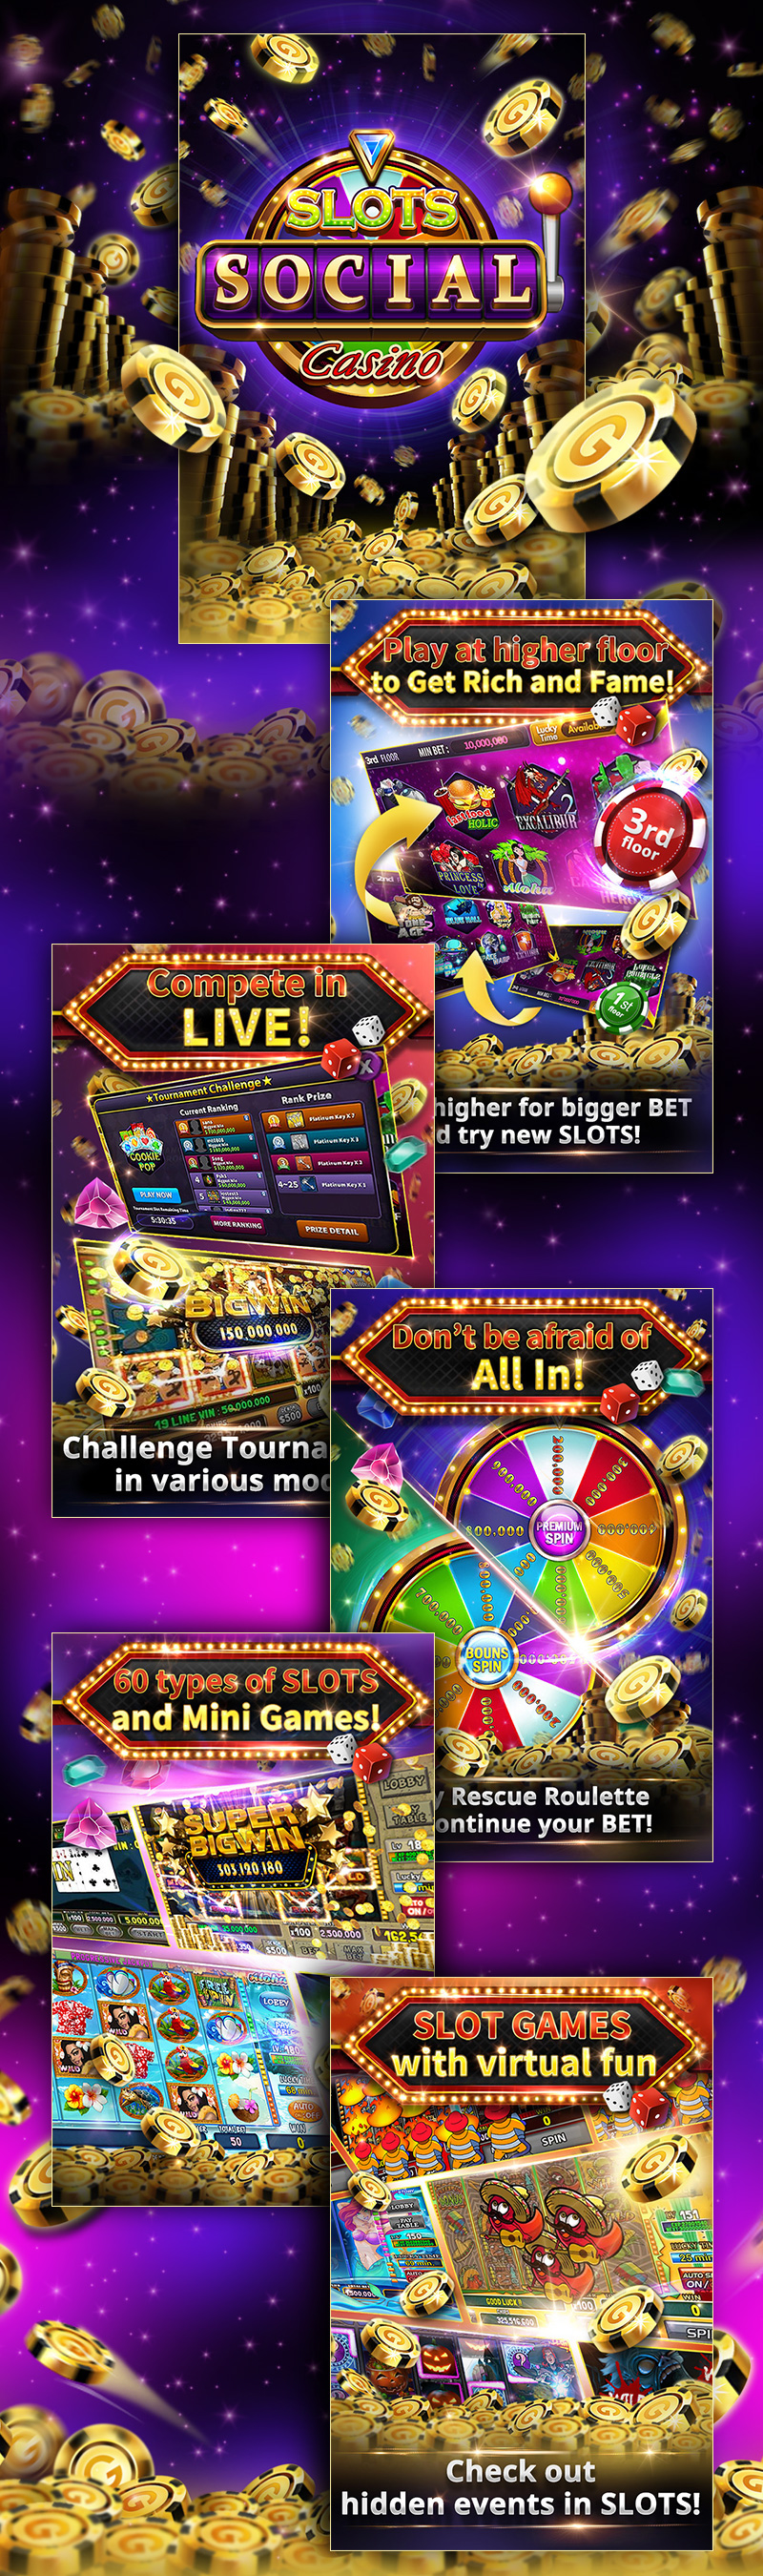 Slots Social Casino Online